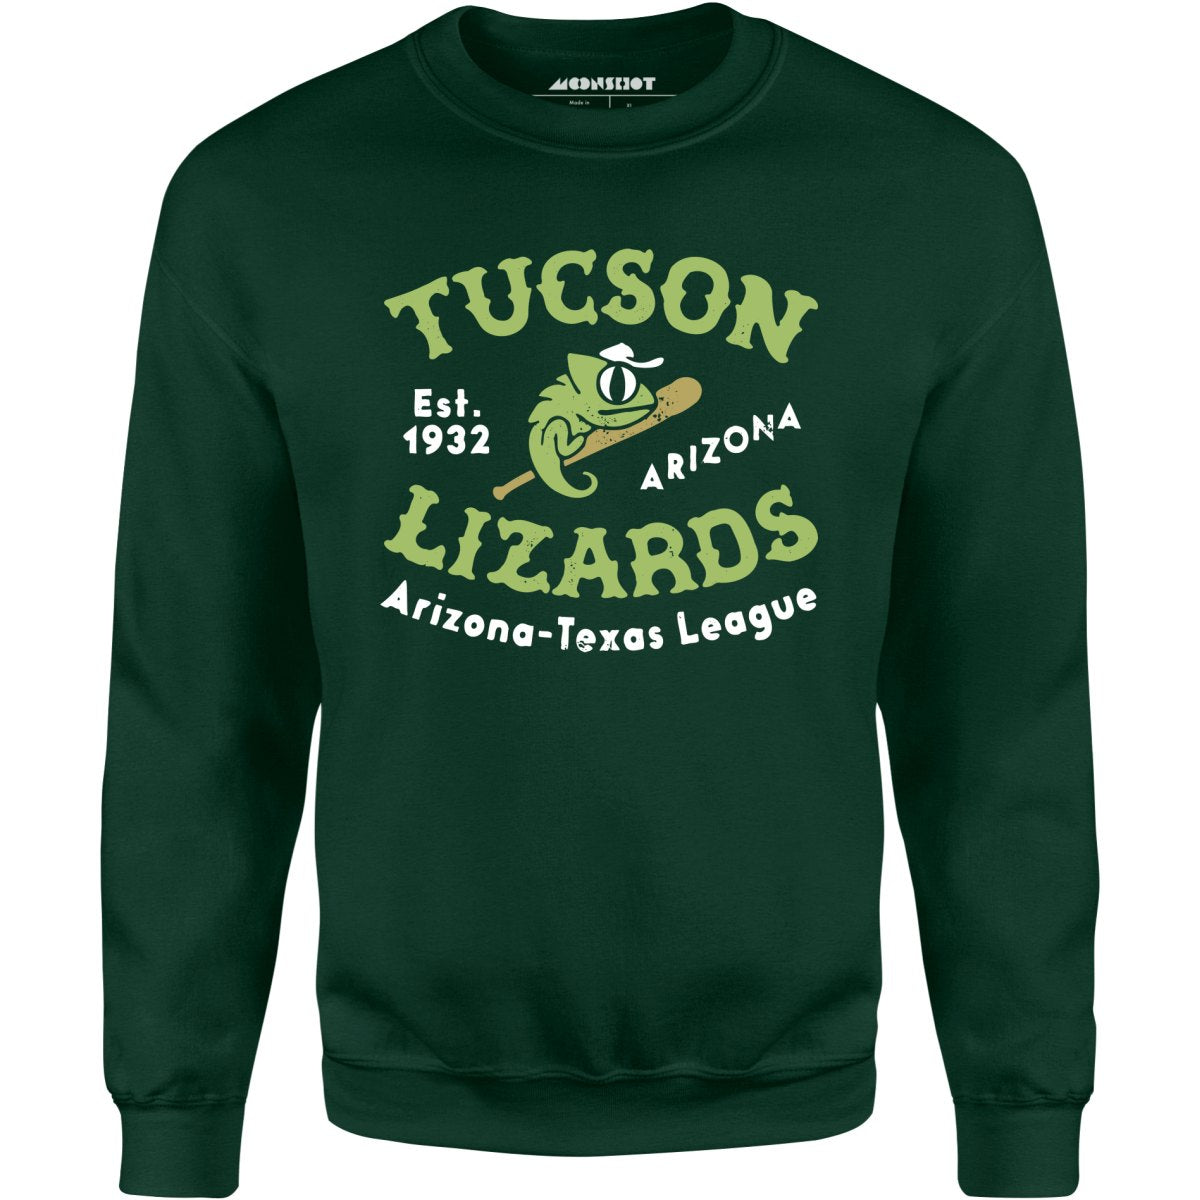 Tucson Lizards - Arizona - Vintage Defunct Baseball Teams - Unisex Sweatshirt